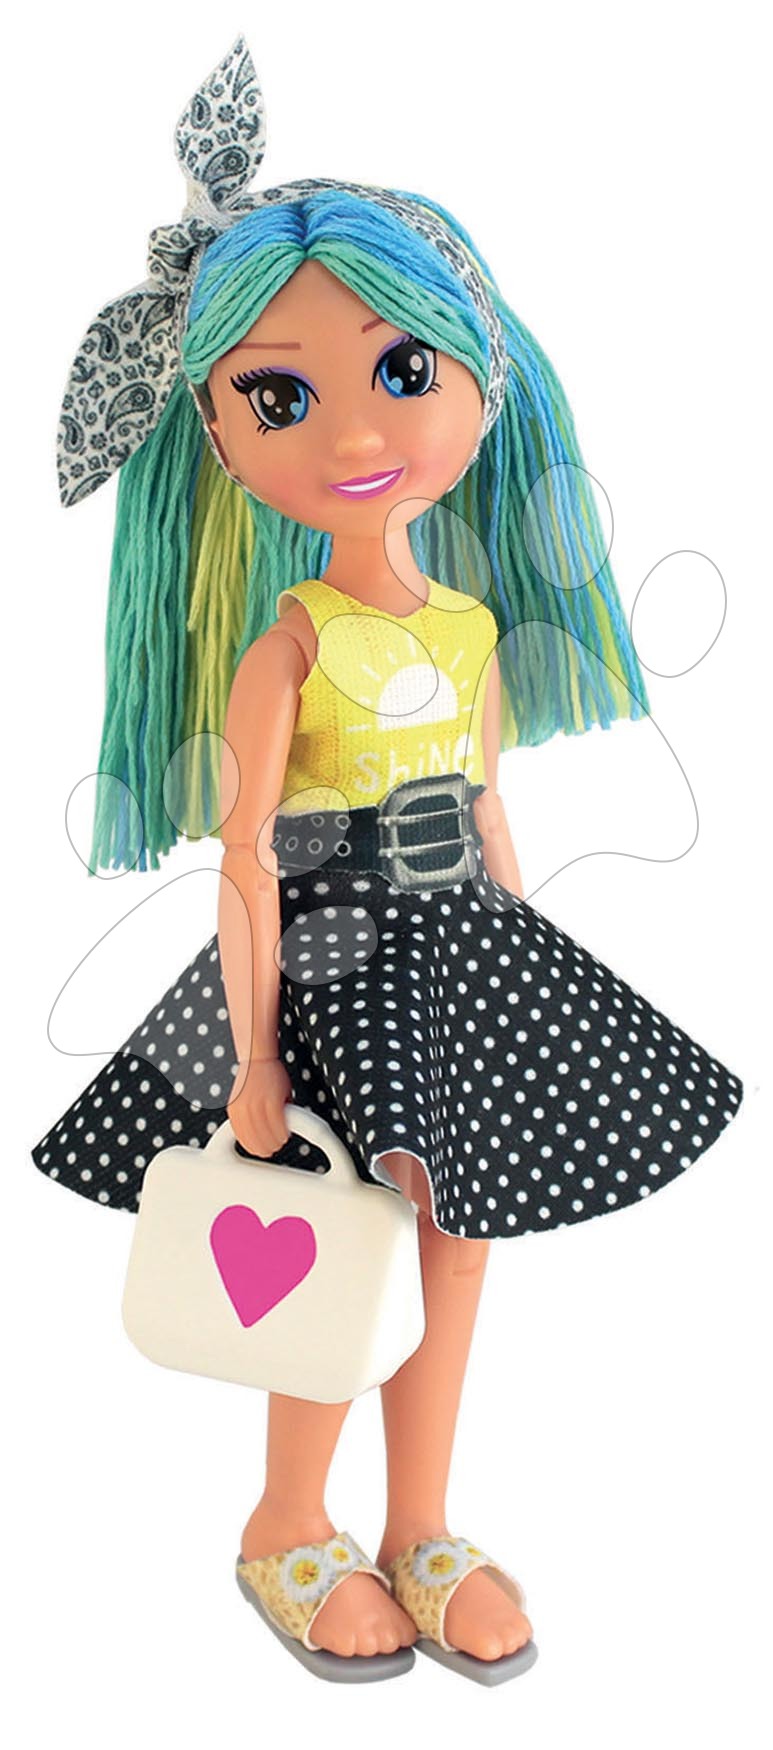 Kreatív alkotás My Model Doll Design Fashion Atelier Educa Készíts 300 ruhamodellt a babának 6 évtől